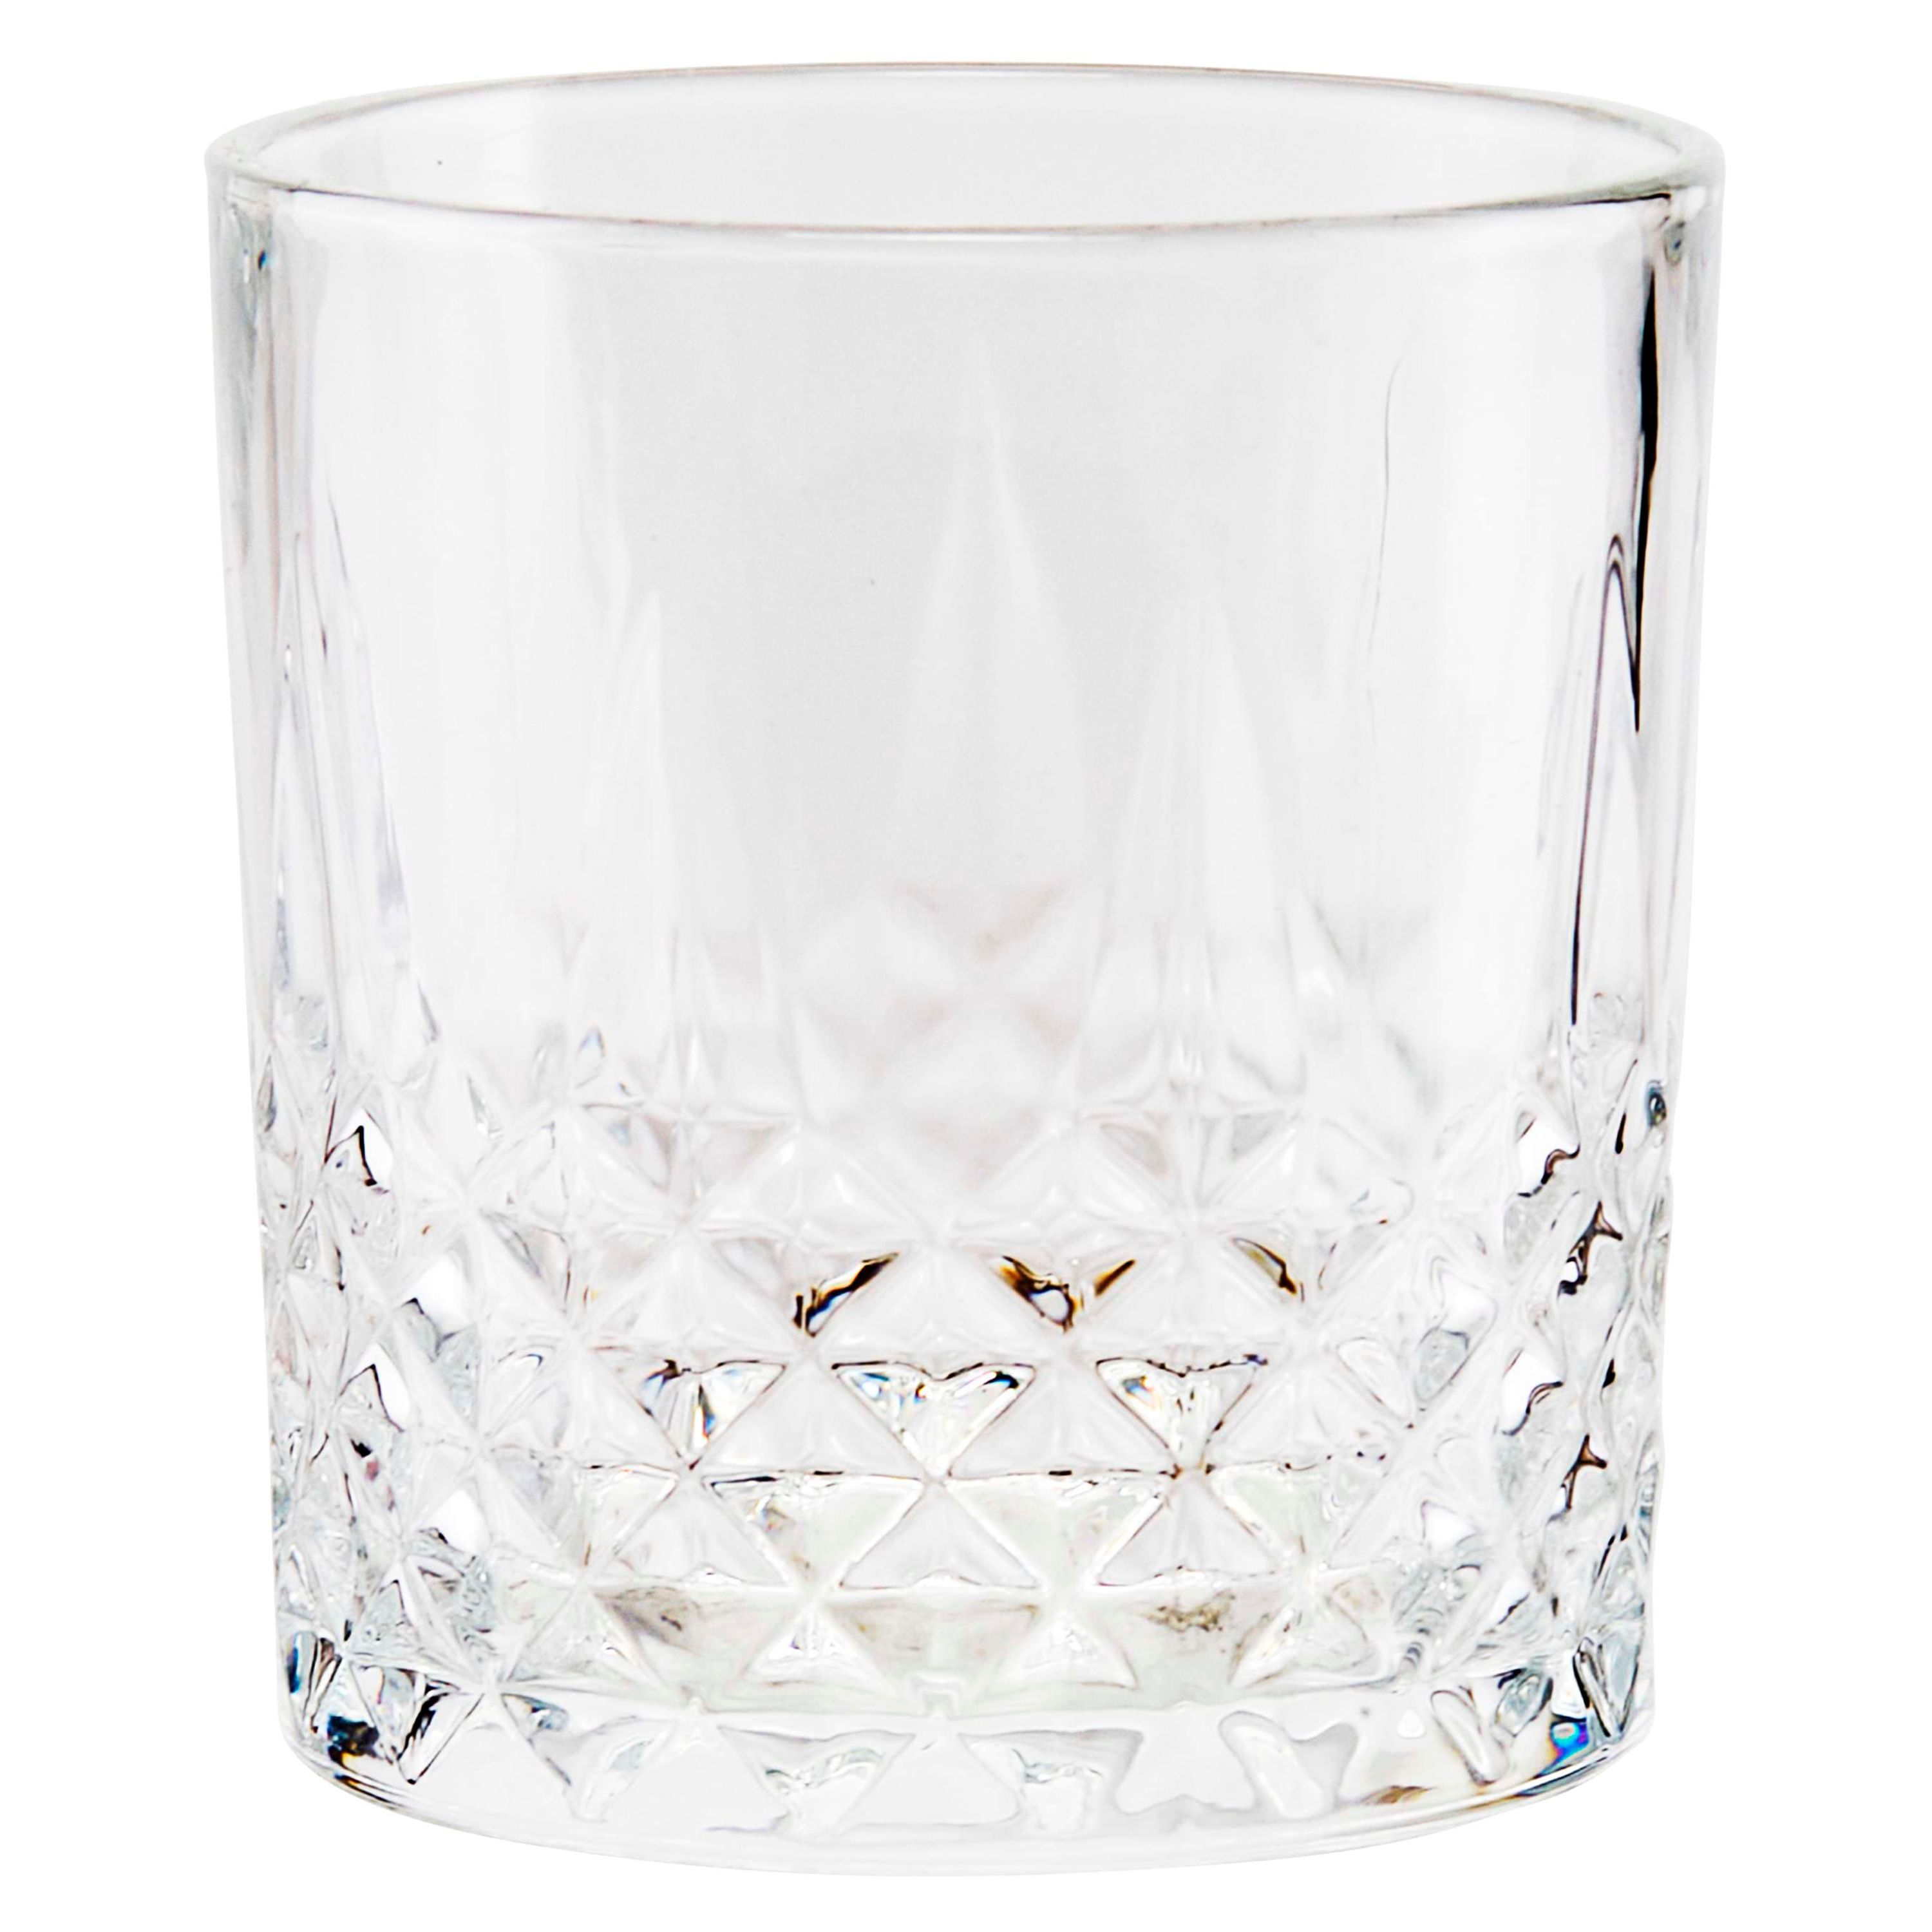 wookgreat Vasos de cristal para beber, juego de 8 vasos de vidrio  duraderos, 4 vasos altos de 15 onz…Ver más wookgreat Vasos de cristal para  beber